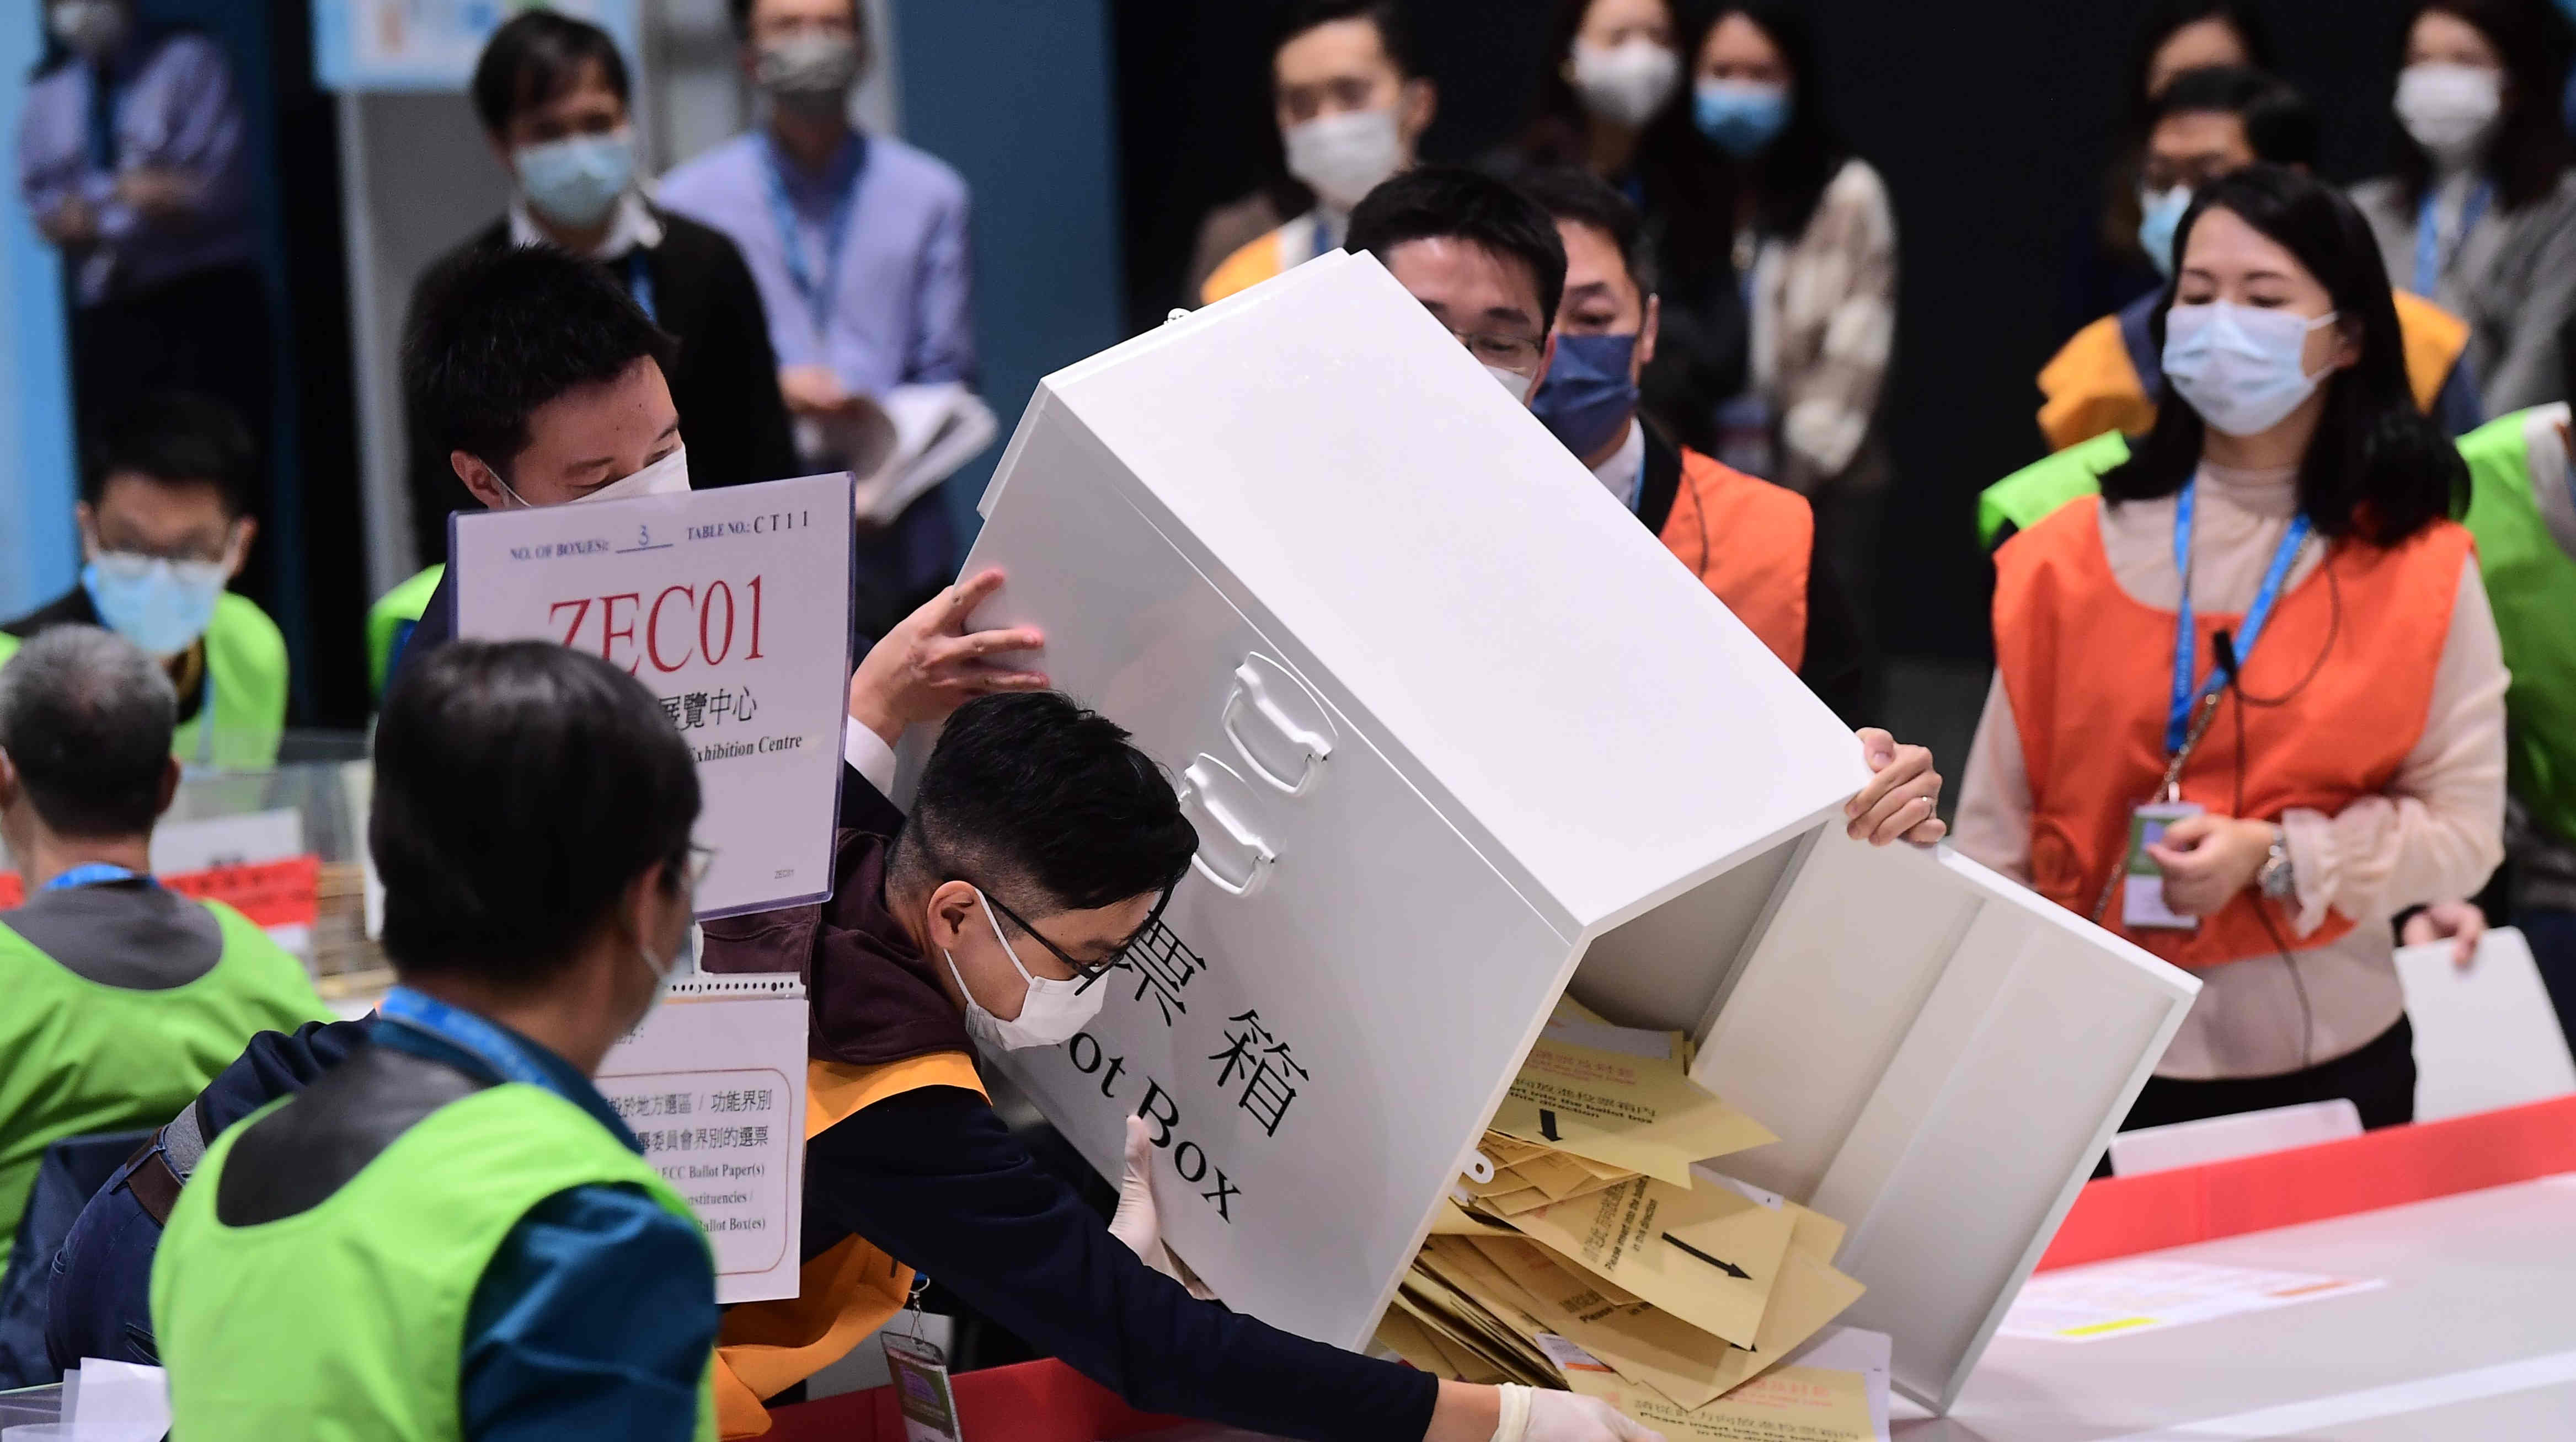 【官媒發聲】香港新一屆立法會有望開啟議政新氣象